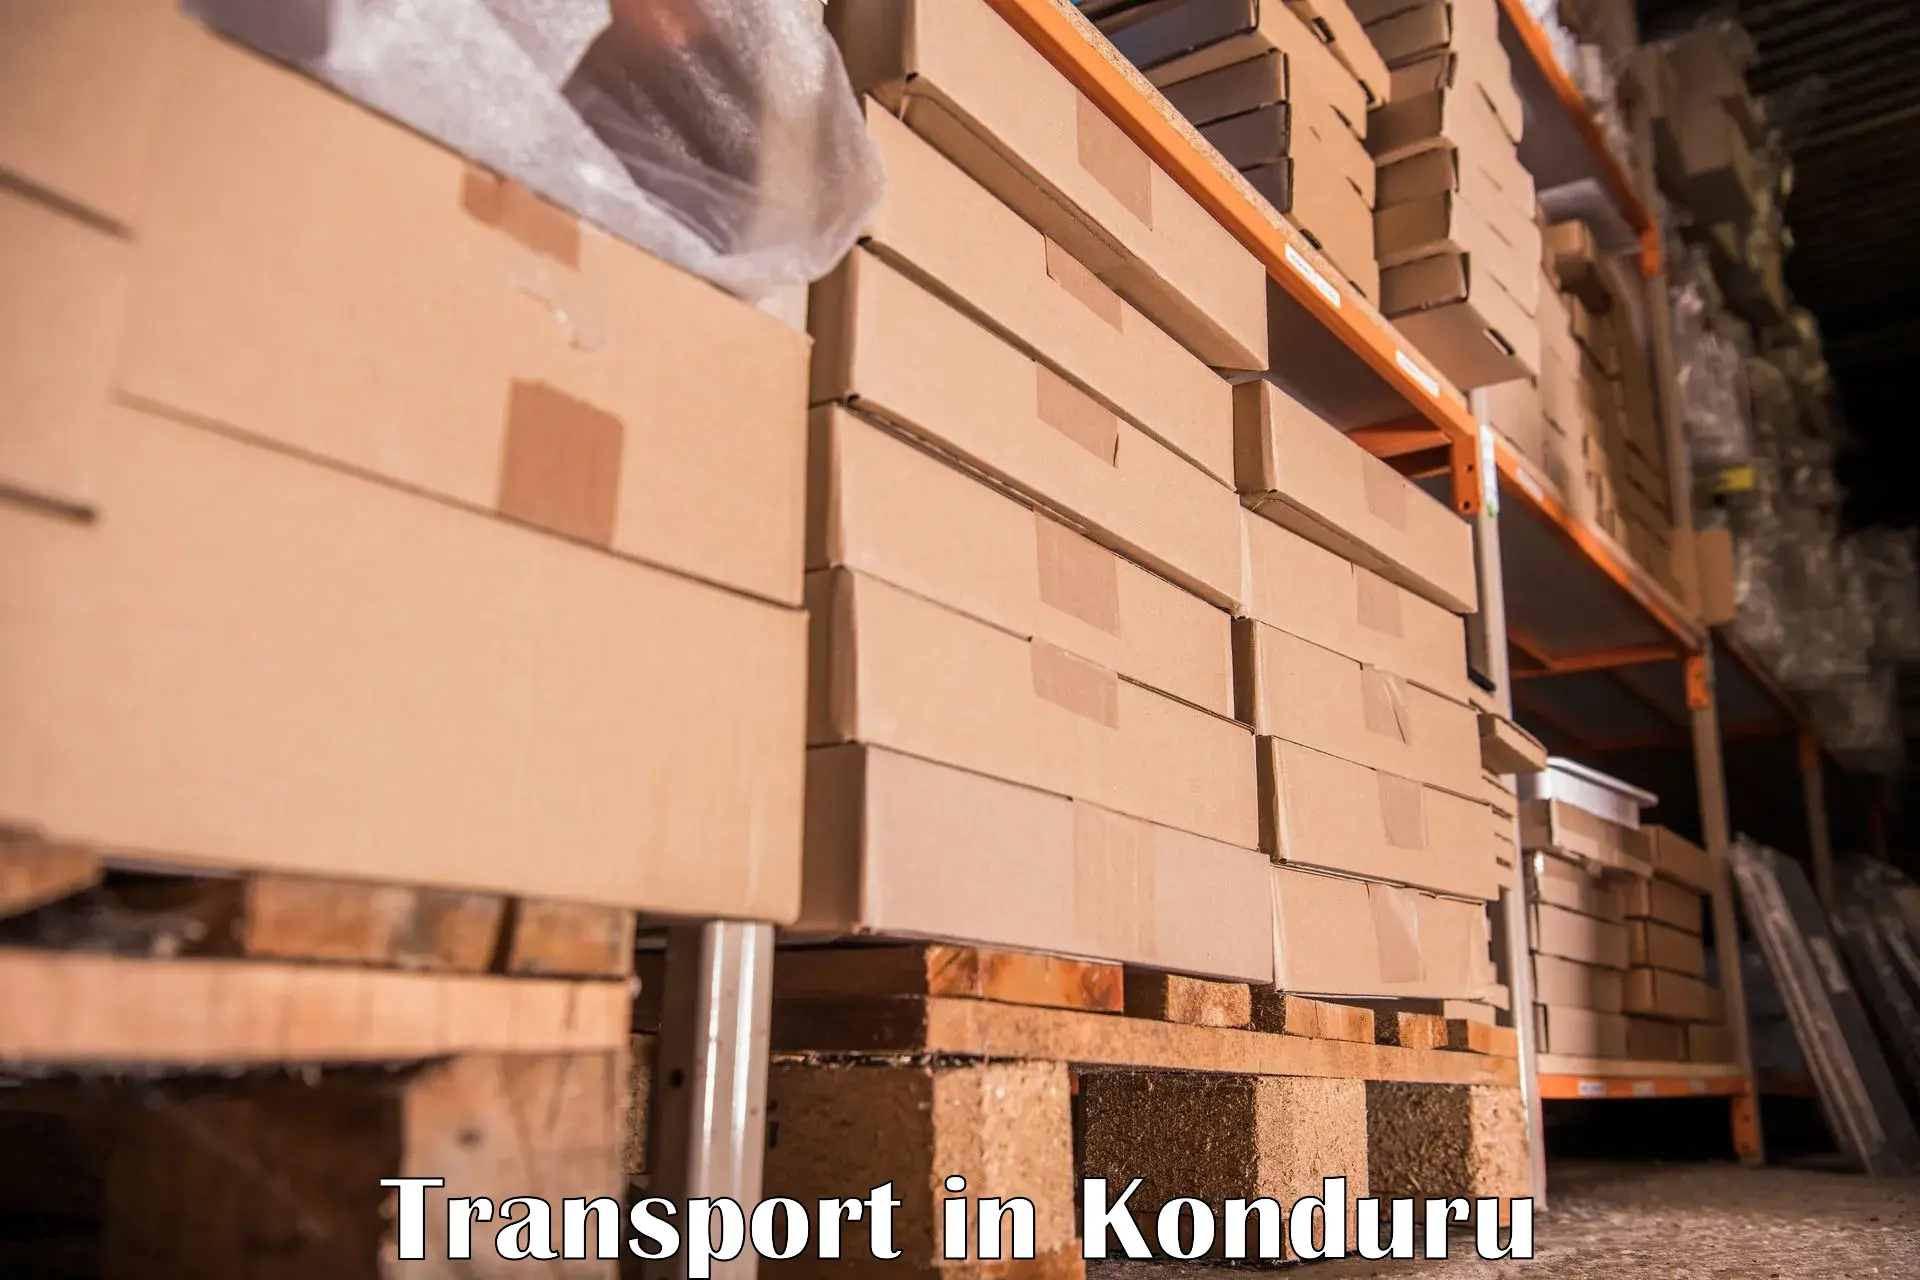 Nearby transport service in Konduru